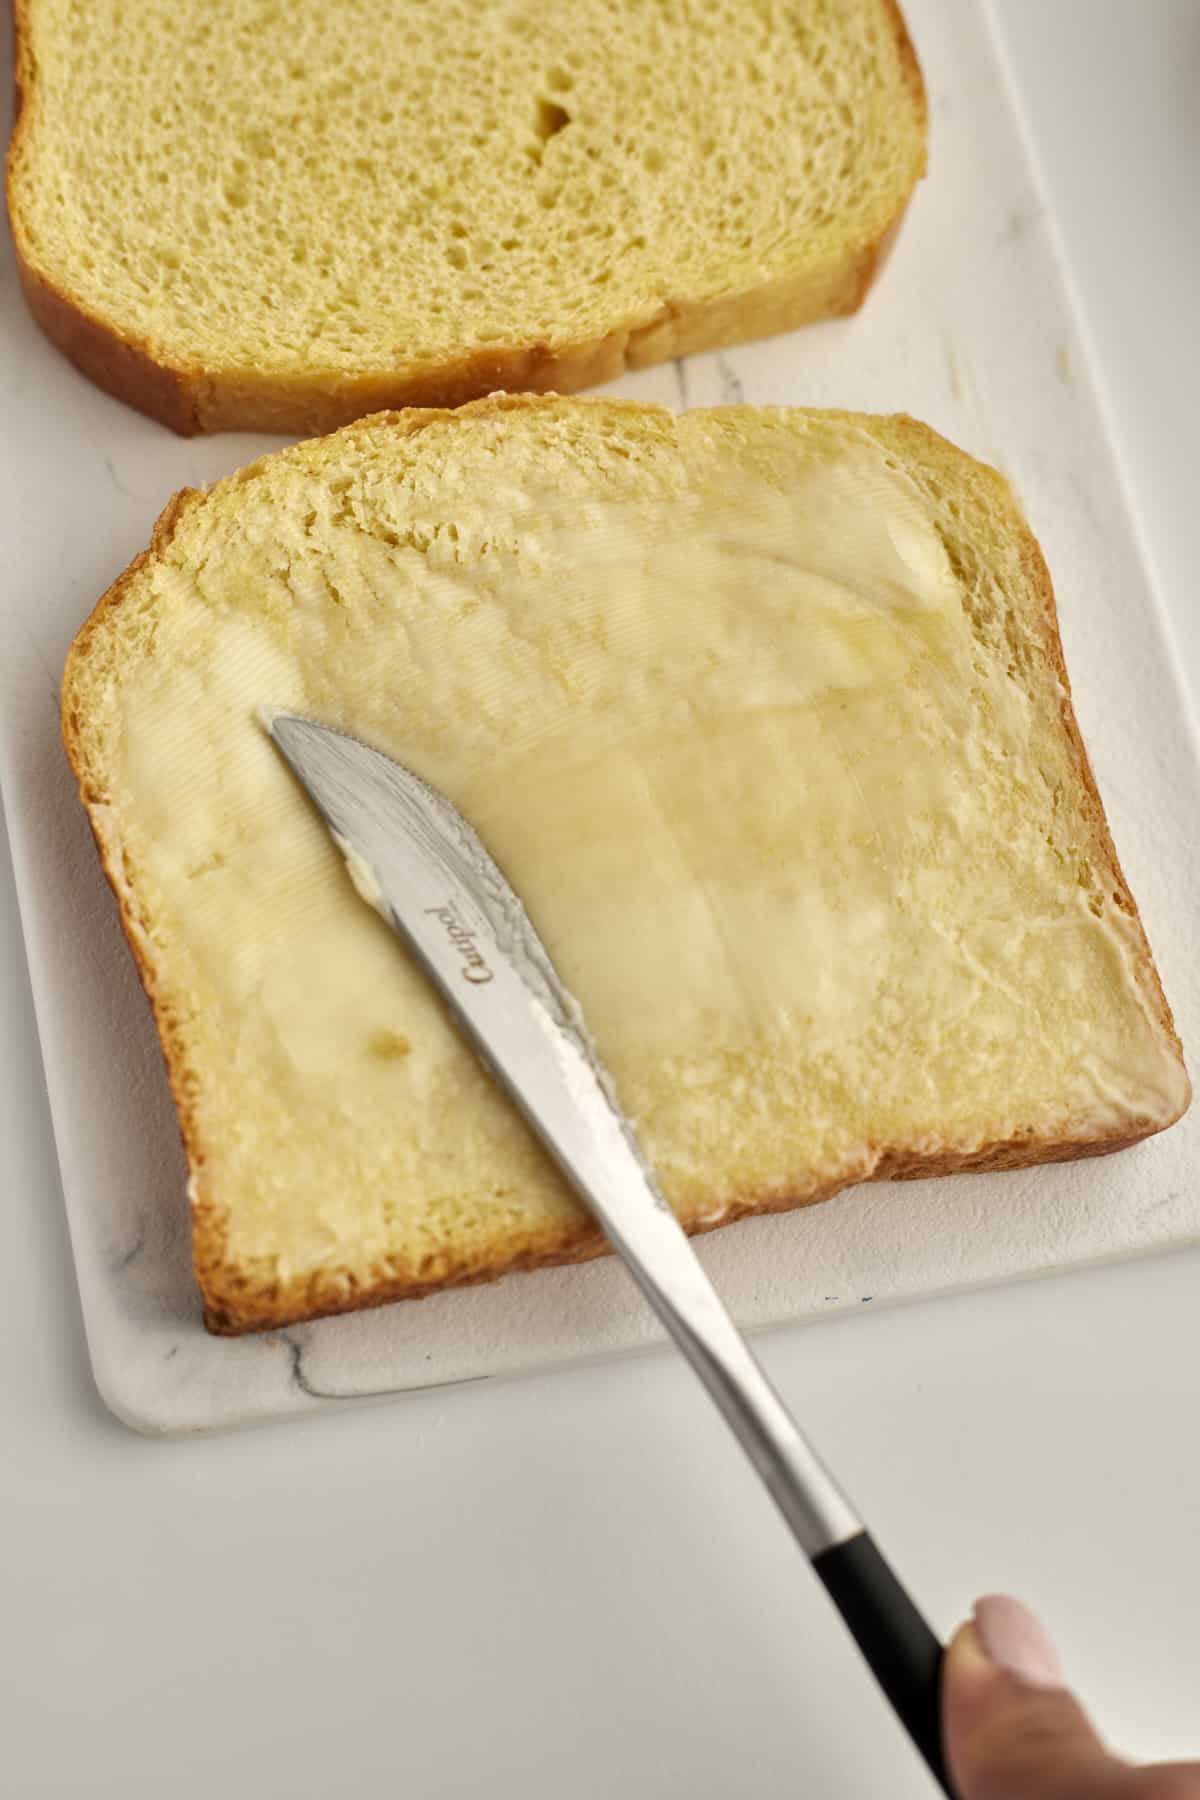 https://www.fooddolls.com/cinnamon-sugar-french-toast/cinnamon-sugar-french-toast2382/